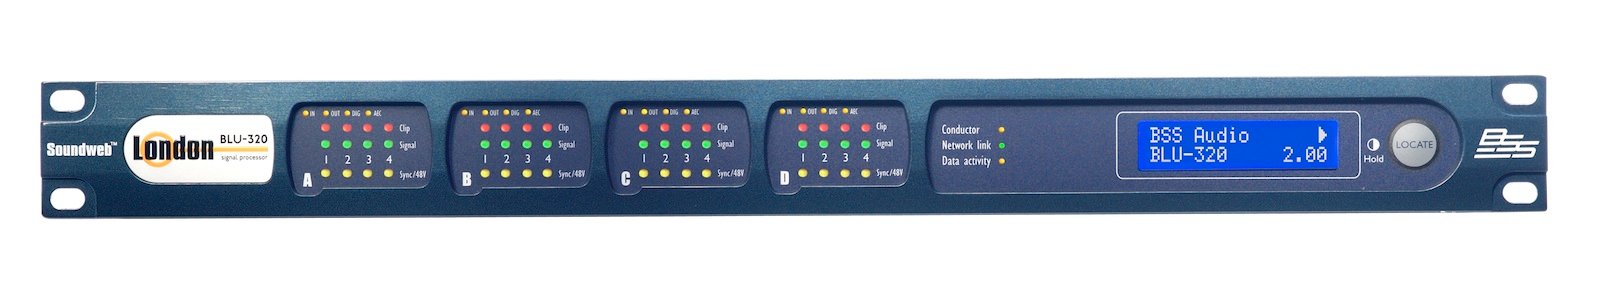 BSS BLU-320 аудио матрица без процессора, порт CobraNet, Blu-Link. Допускается установка до 4 вх./вых. карт